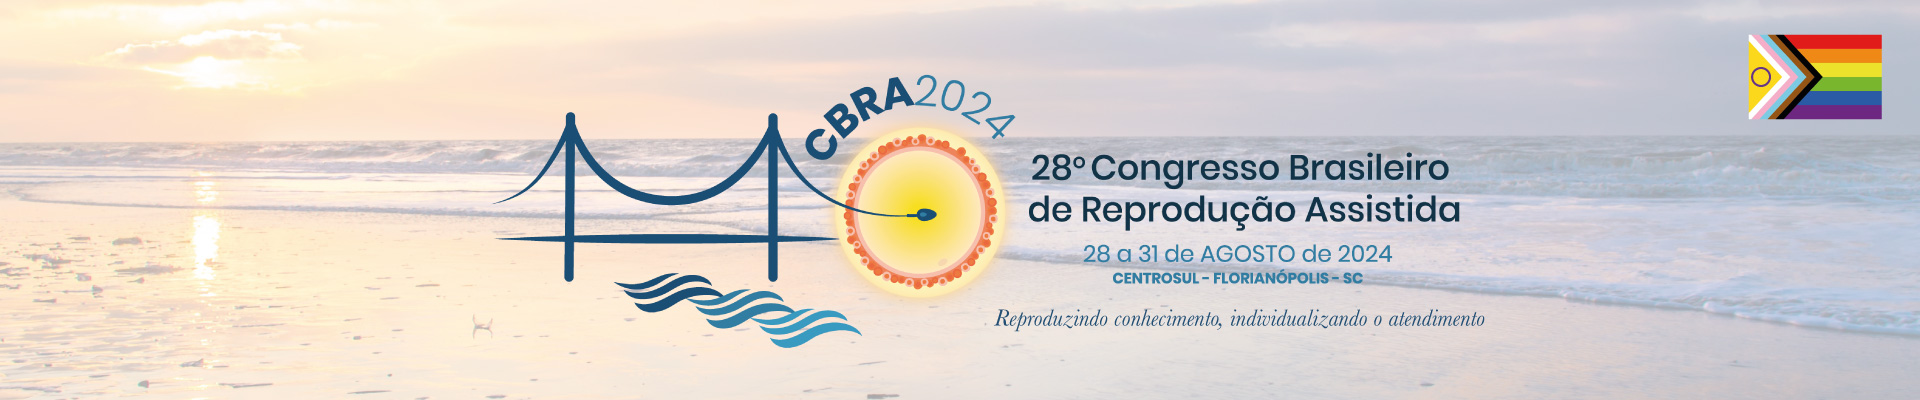 Congresso Brasileiro de Reprodução Assistida 2024